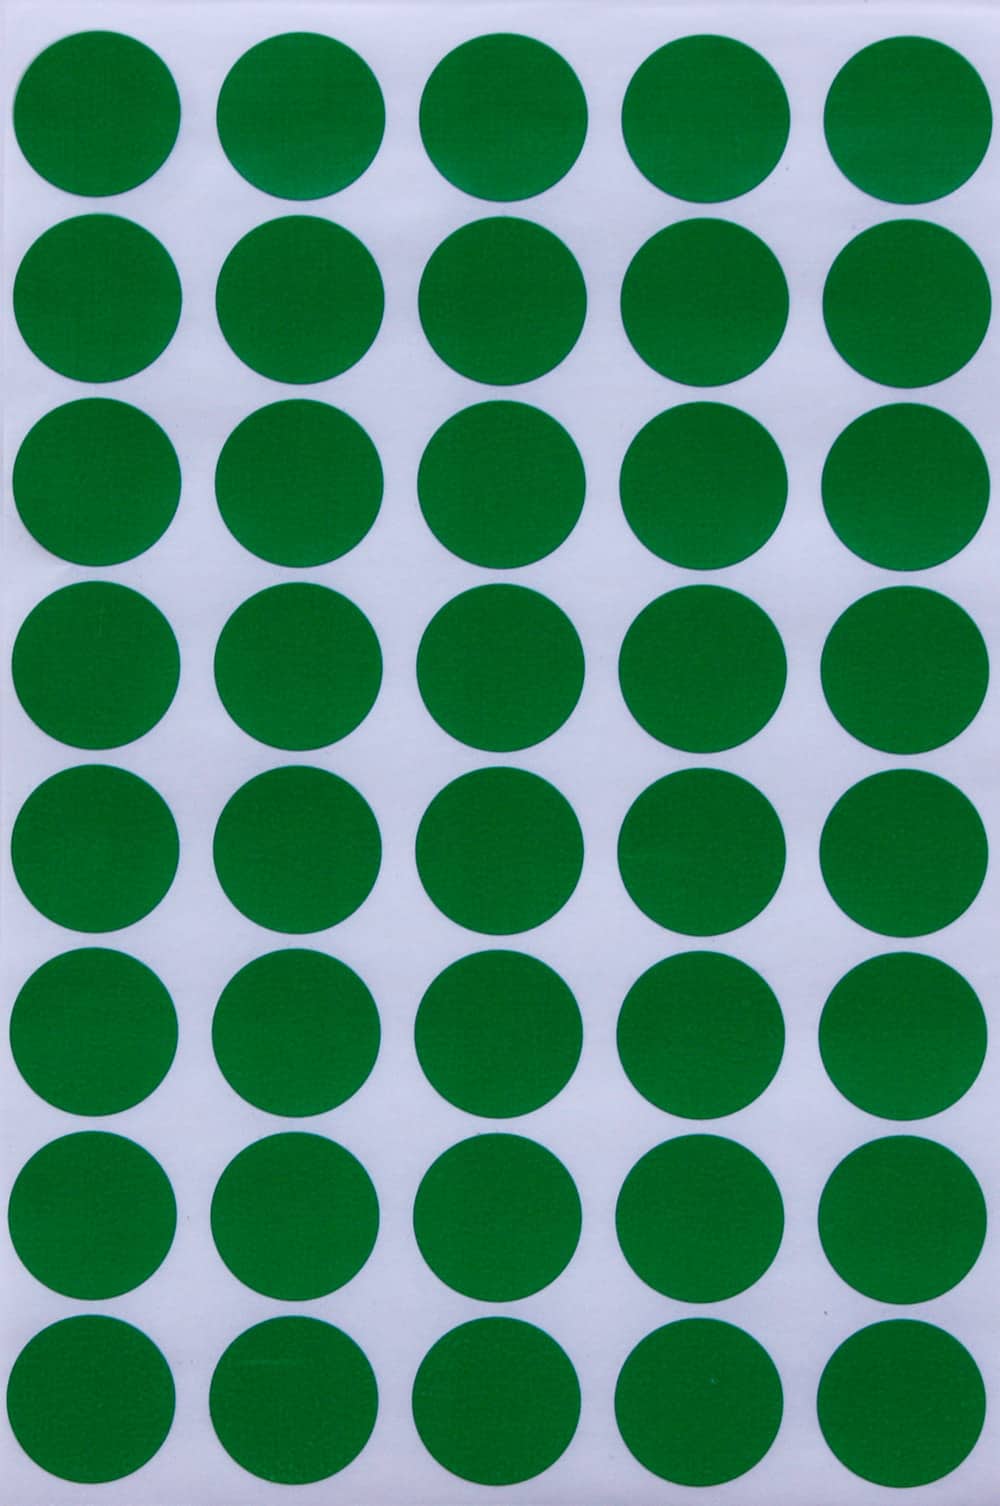 Glue Dots Adhesive Dots, Poster, 1/2 Inch - 5 sheets (60 dots)